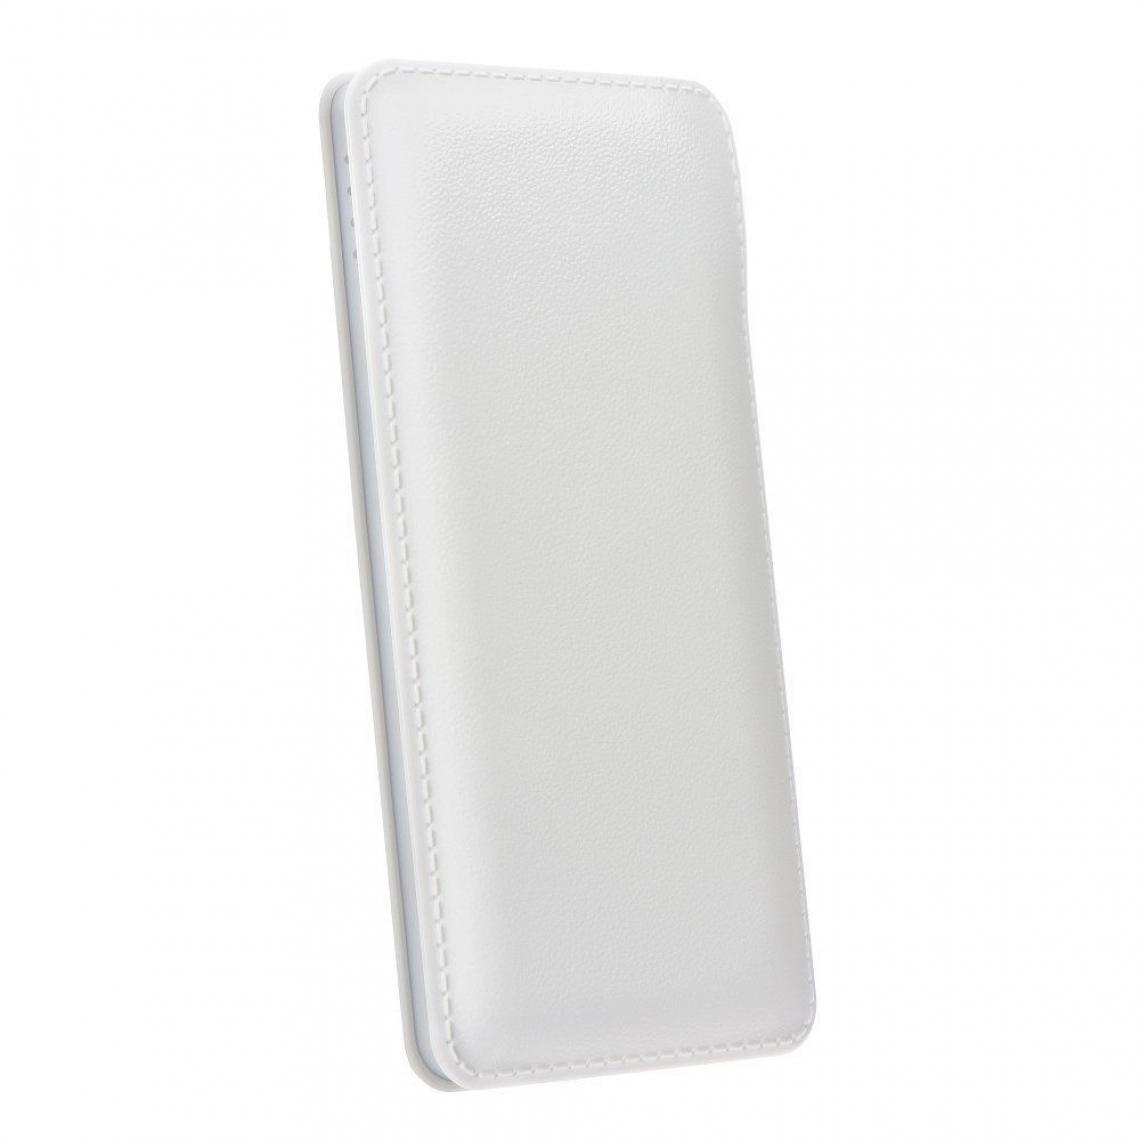 Ozzzo - Chargeur batterie externe 10000mAh powerbank ozzzo blanc pour Huawei MediaPad M6 8.4 - Autres accessoires smartphone